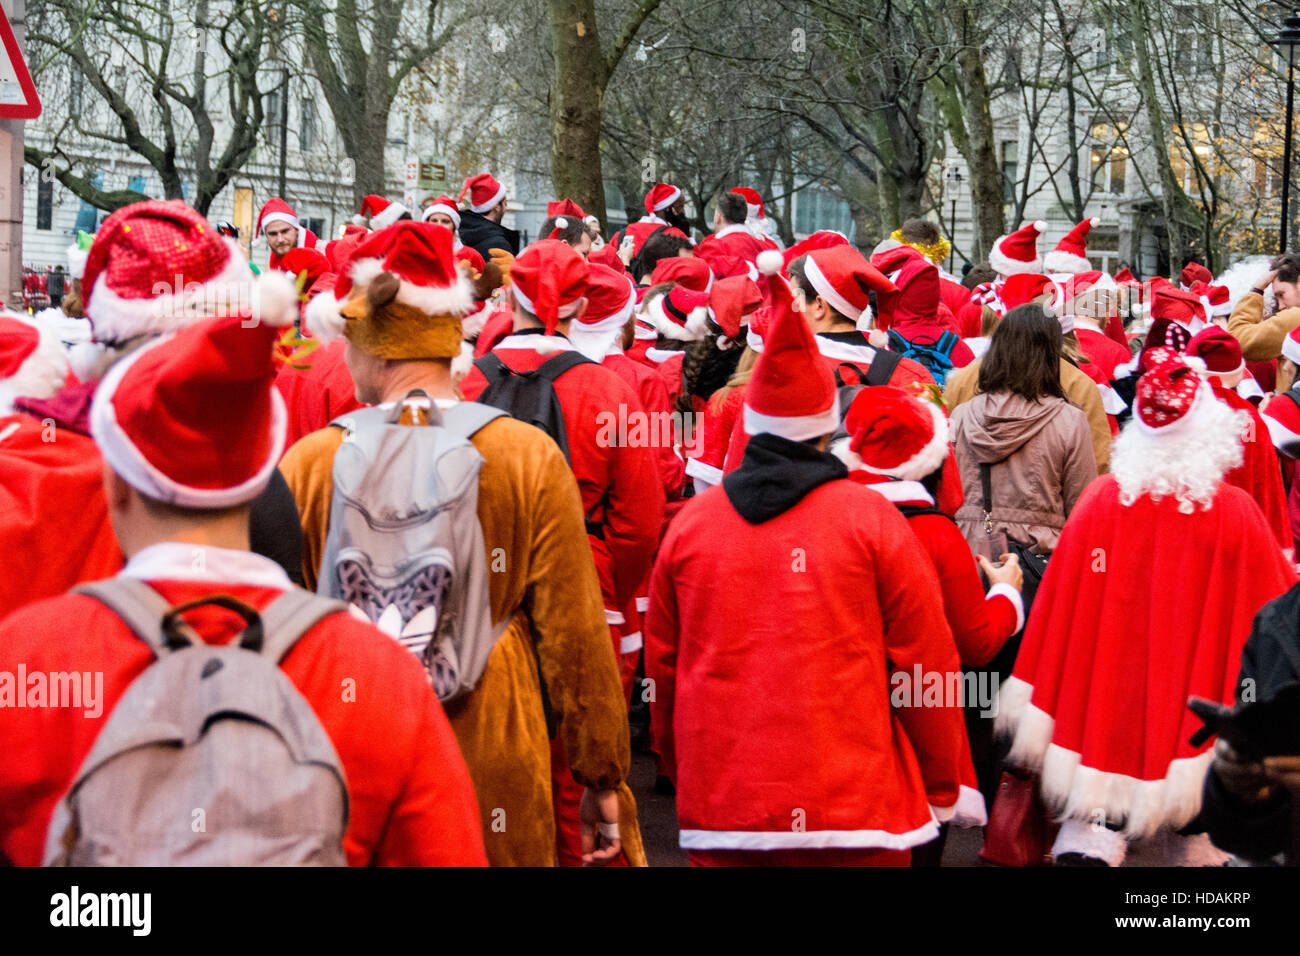 Londres, Angleterre, Royaume-Uni. 10 décembre 2016. Santacon Santas dans les rues de Londres. Santacon est une parade de Noël non religieux qui a normalement lieu à Londres un samedi en décembre de chaque année. Credit : Jansos/ Alamy Live News Banque D'Images